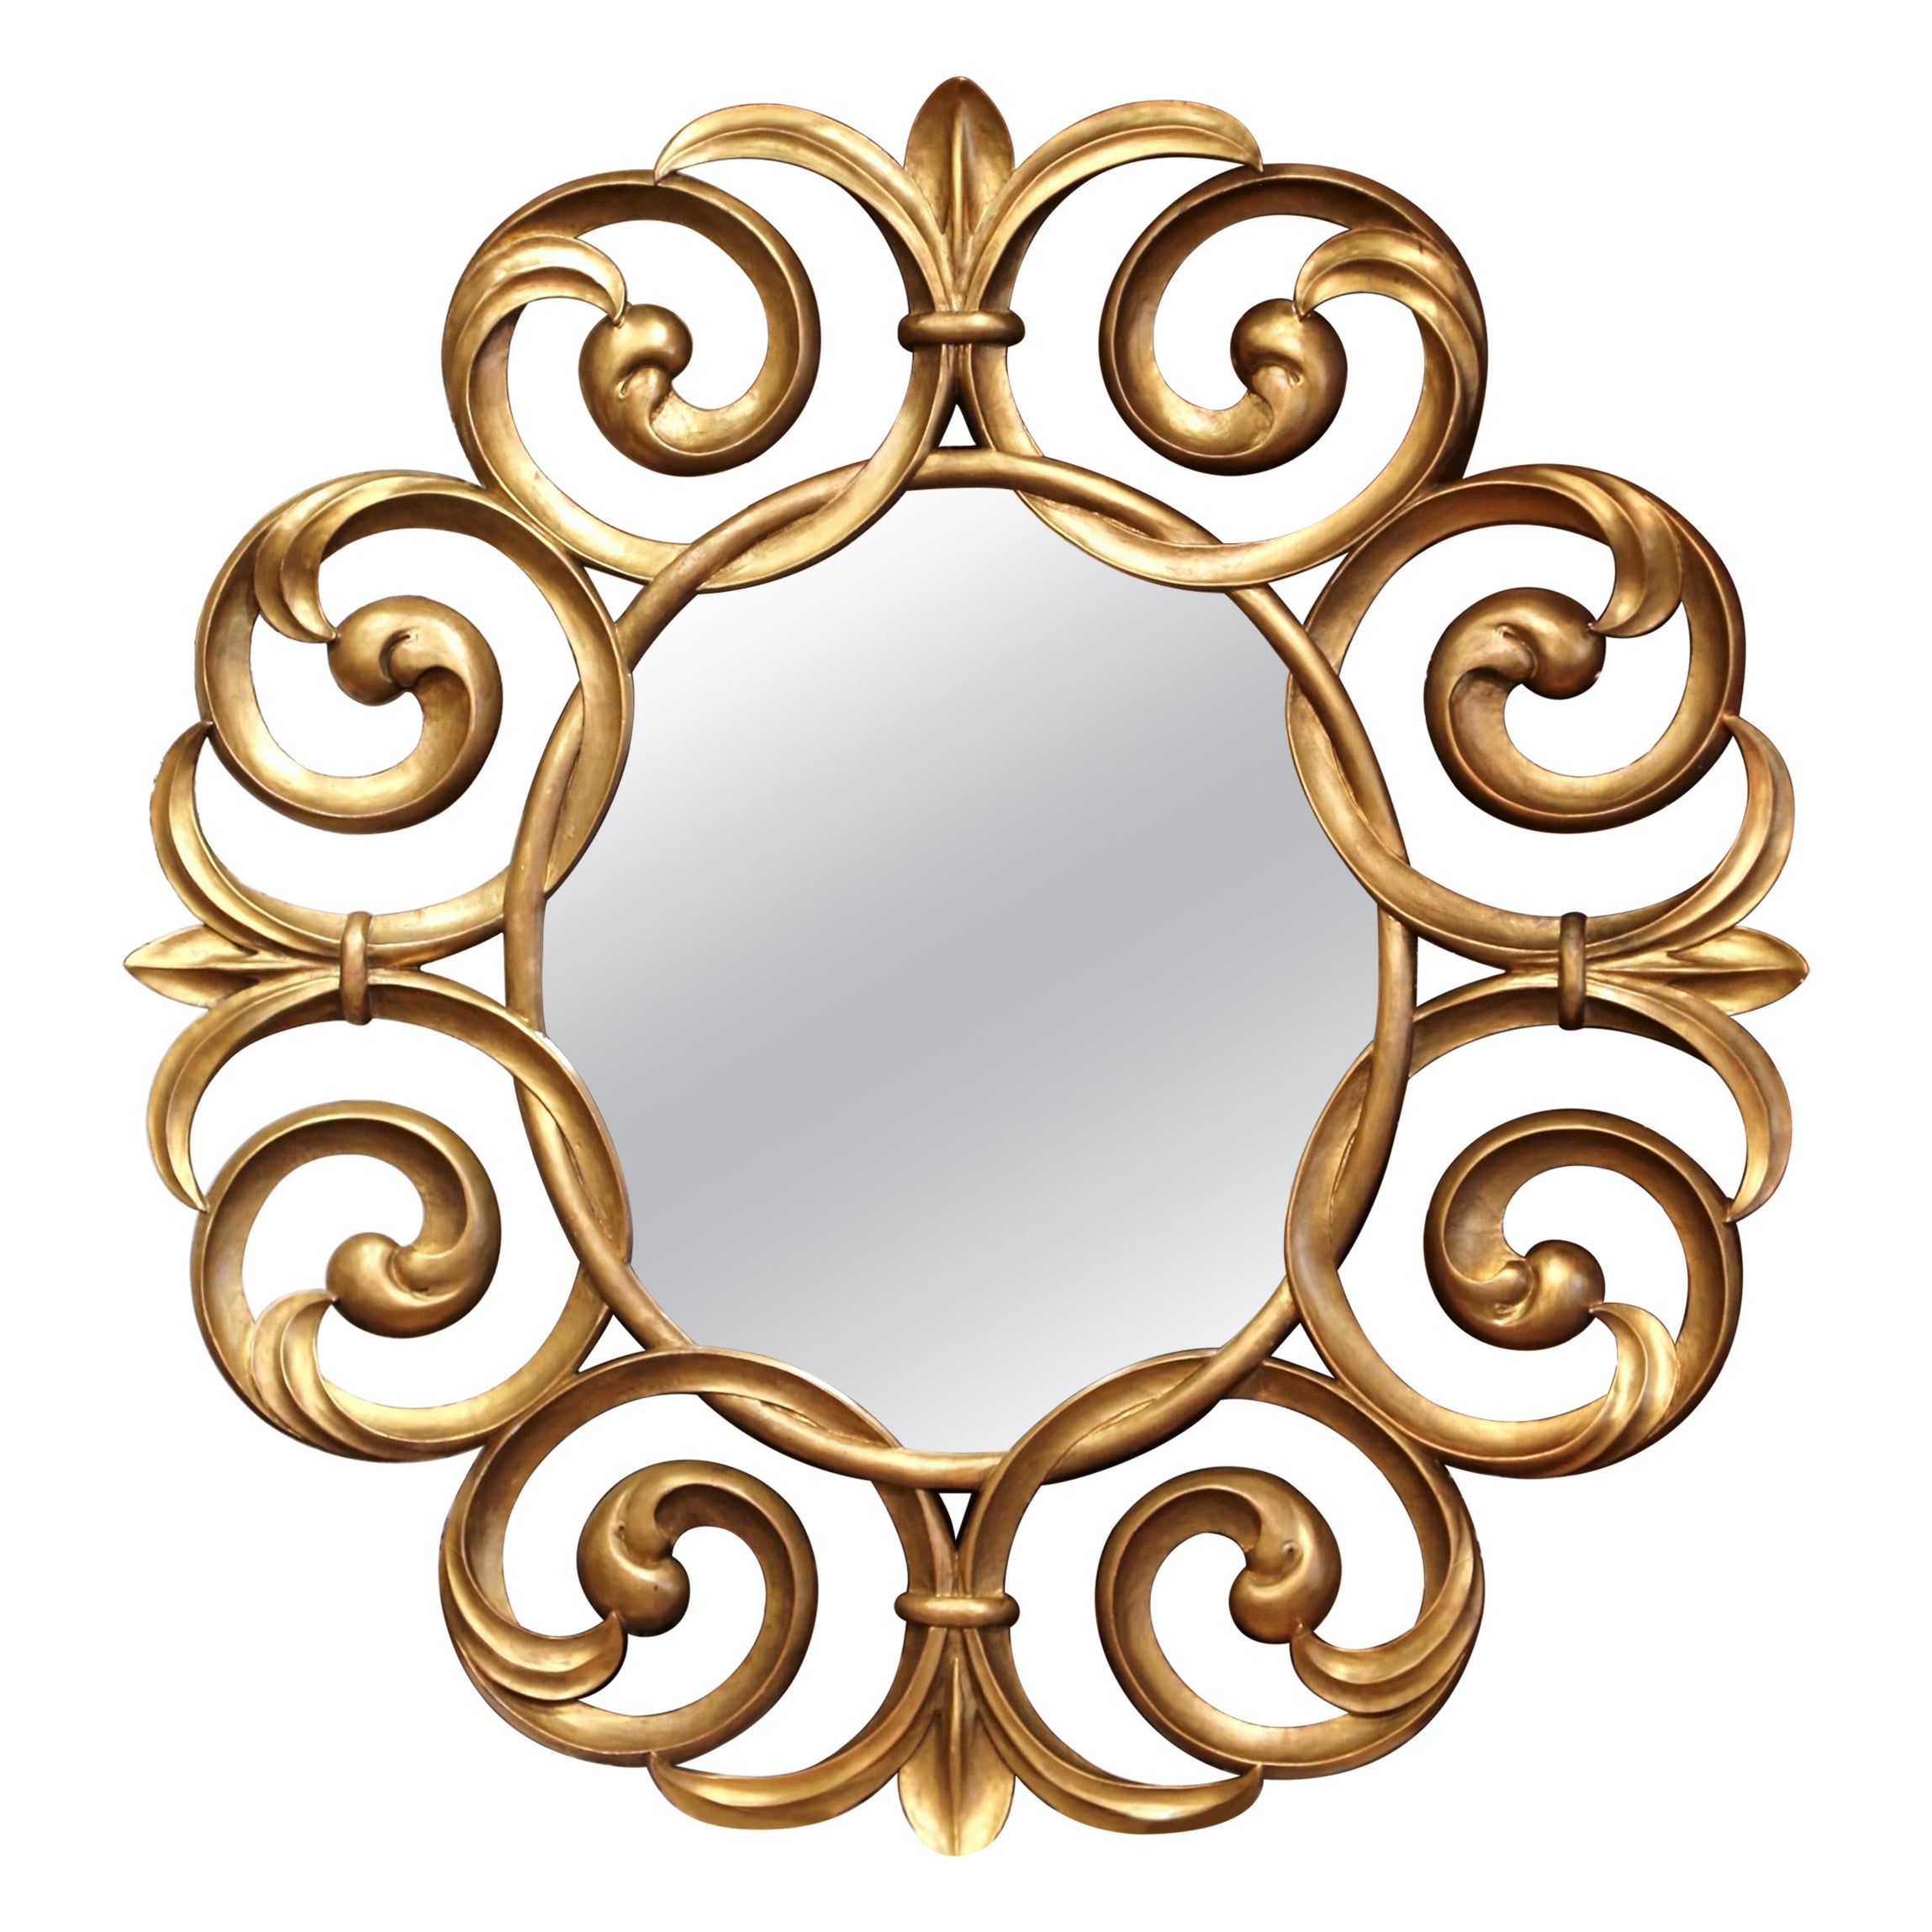 Monumental miroir Sunburst du début du 20e siècle en bois doré sculpté français